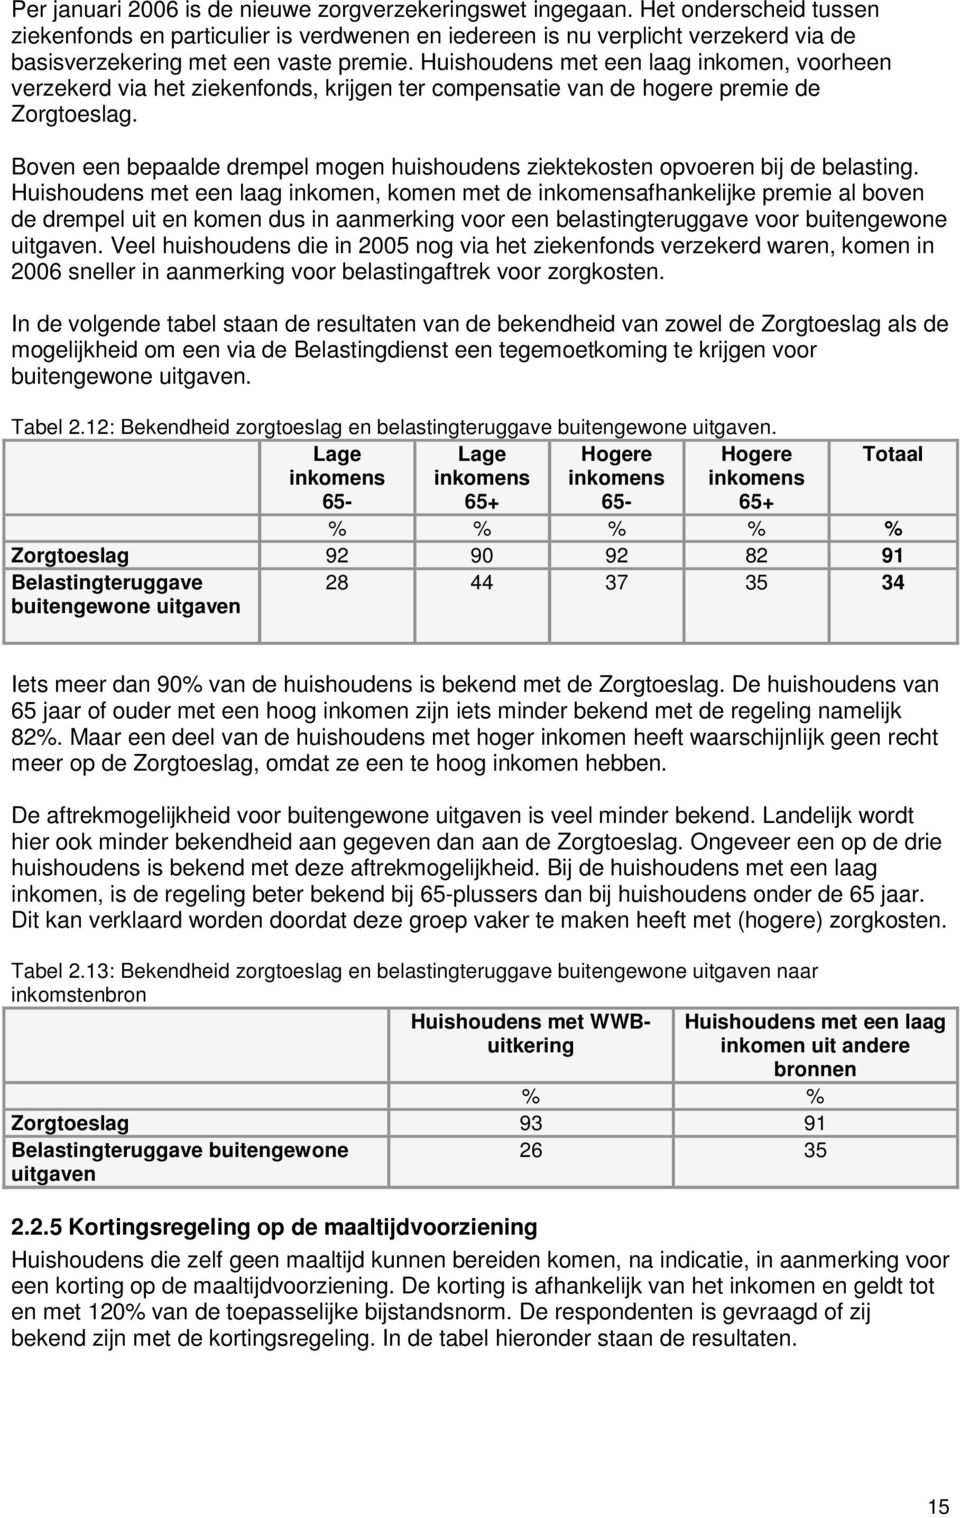 Huishoudens met een laag inkomen, voorheen verzekerd via het ziekenfonds, krijgen ter compensatie van de hogere premie de Zorgtoeslag.